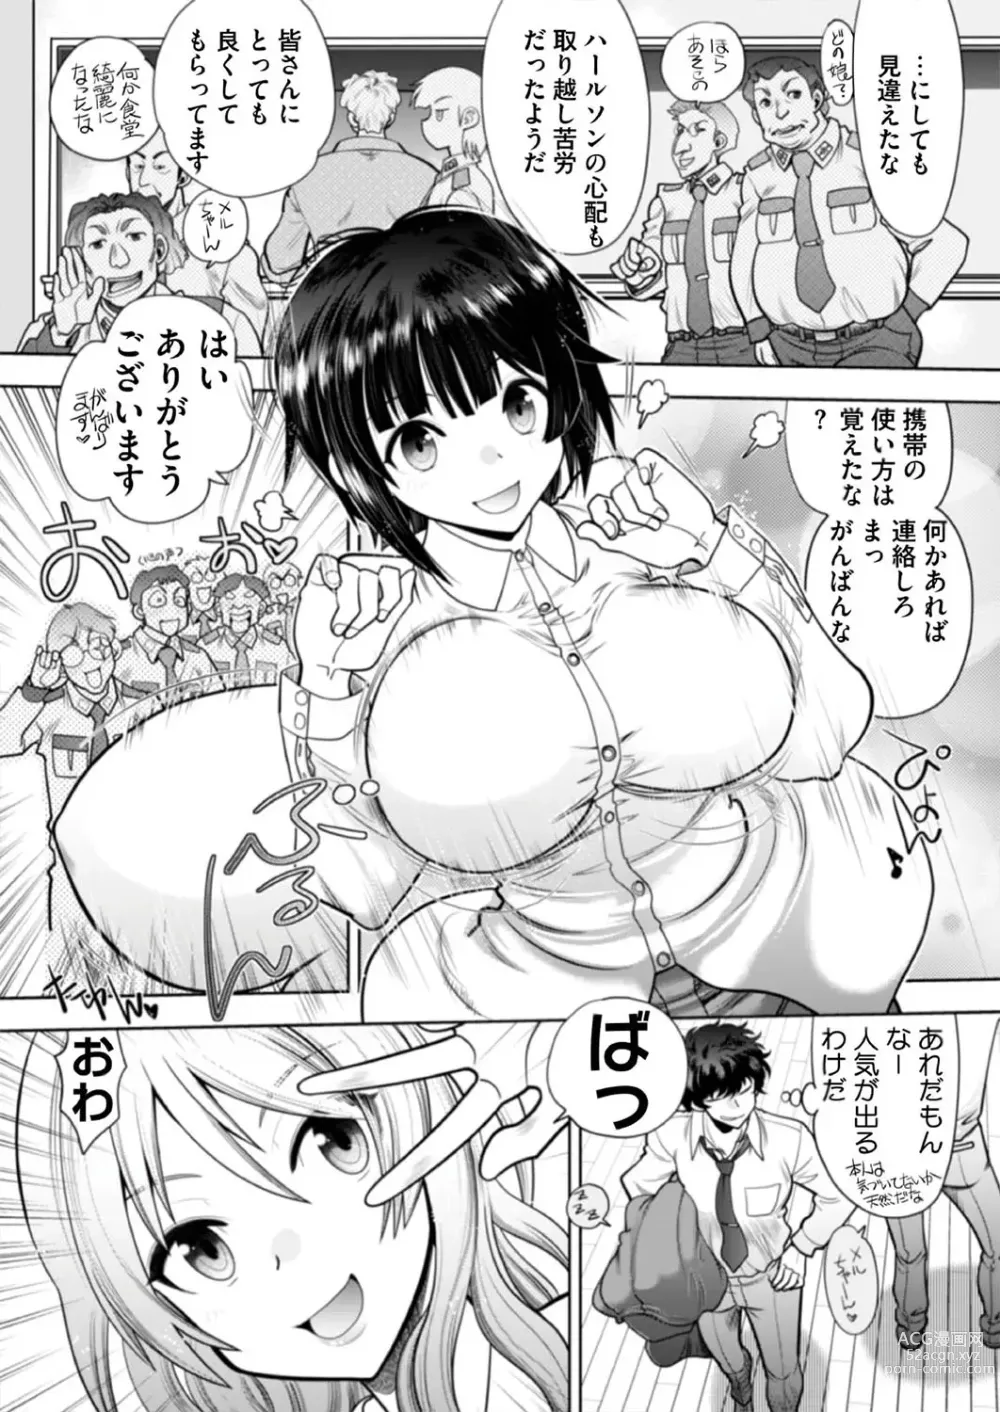 Page 167 of manga BugBug 2019-08